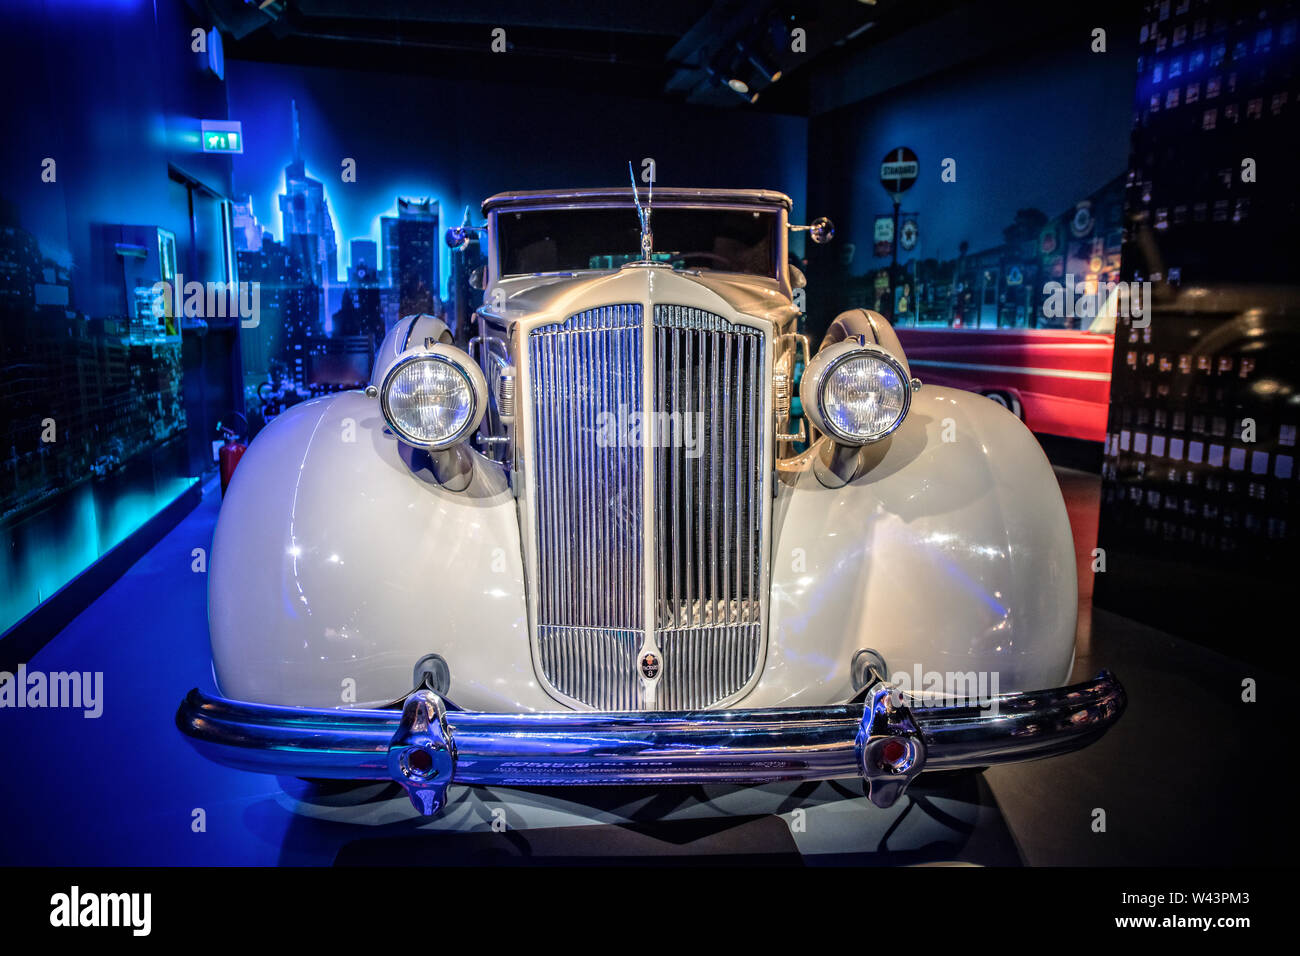 Italia Piemonte Torino Museo dell' Automonbile Torino Mauto ( ) - Stati Uniti 1937 - Packard Super- Otto 1501-" mai più di trenta miglia ora!" Con questa promessa, il gigante attraversa l'Atlantico, Foto Stock